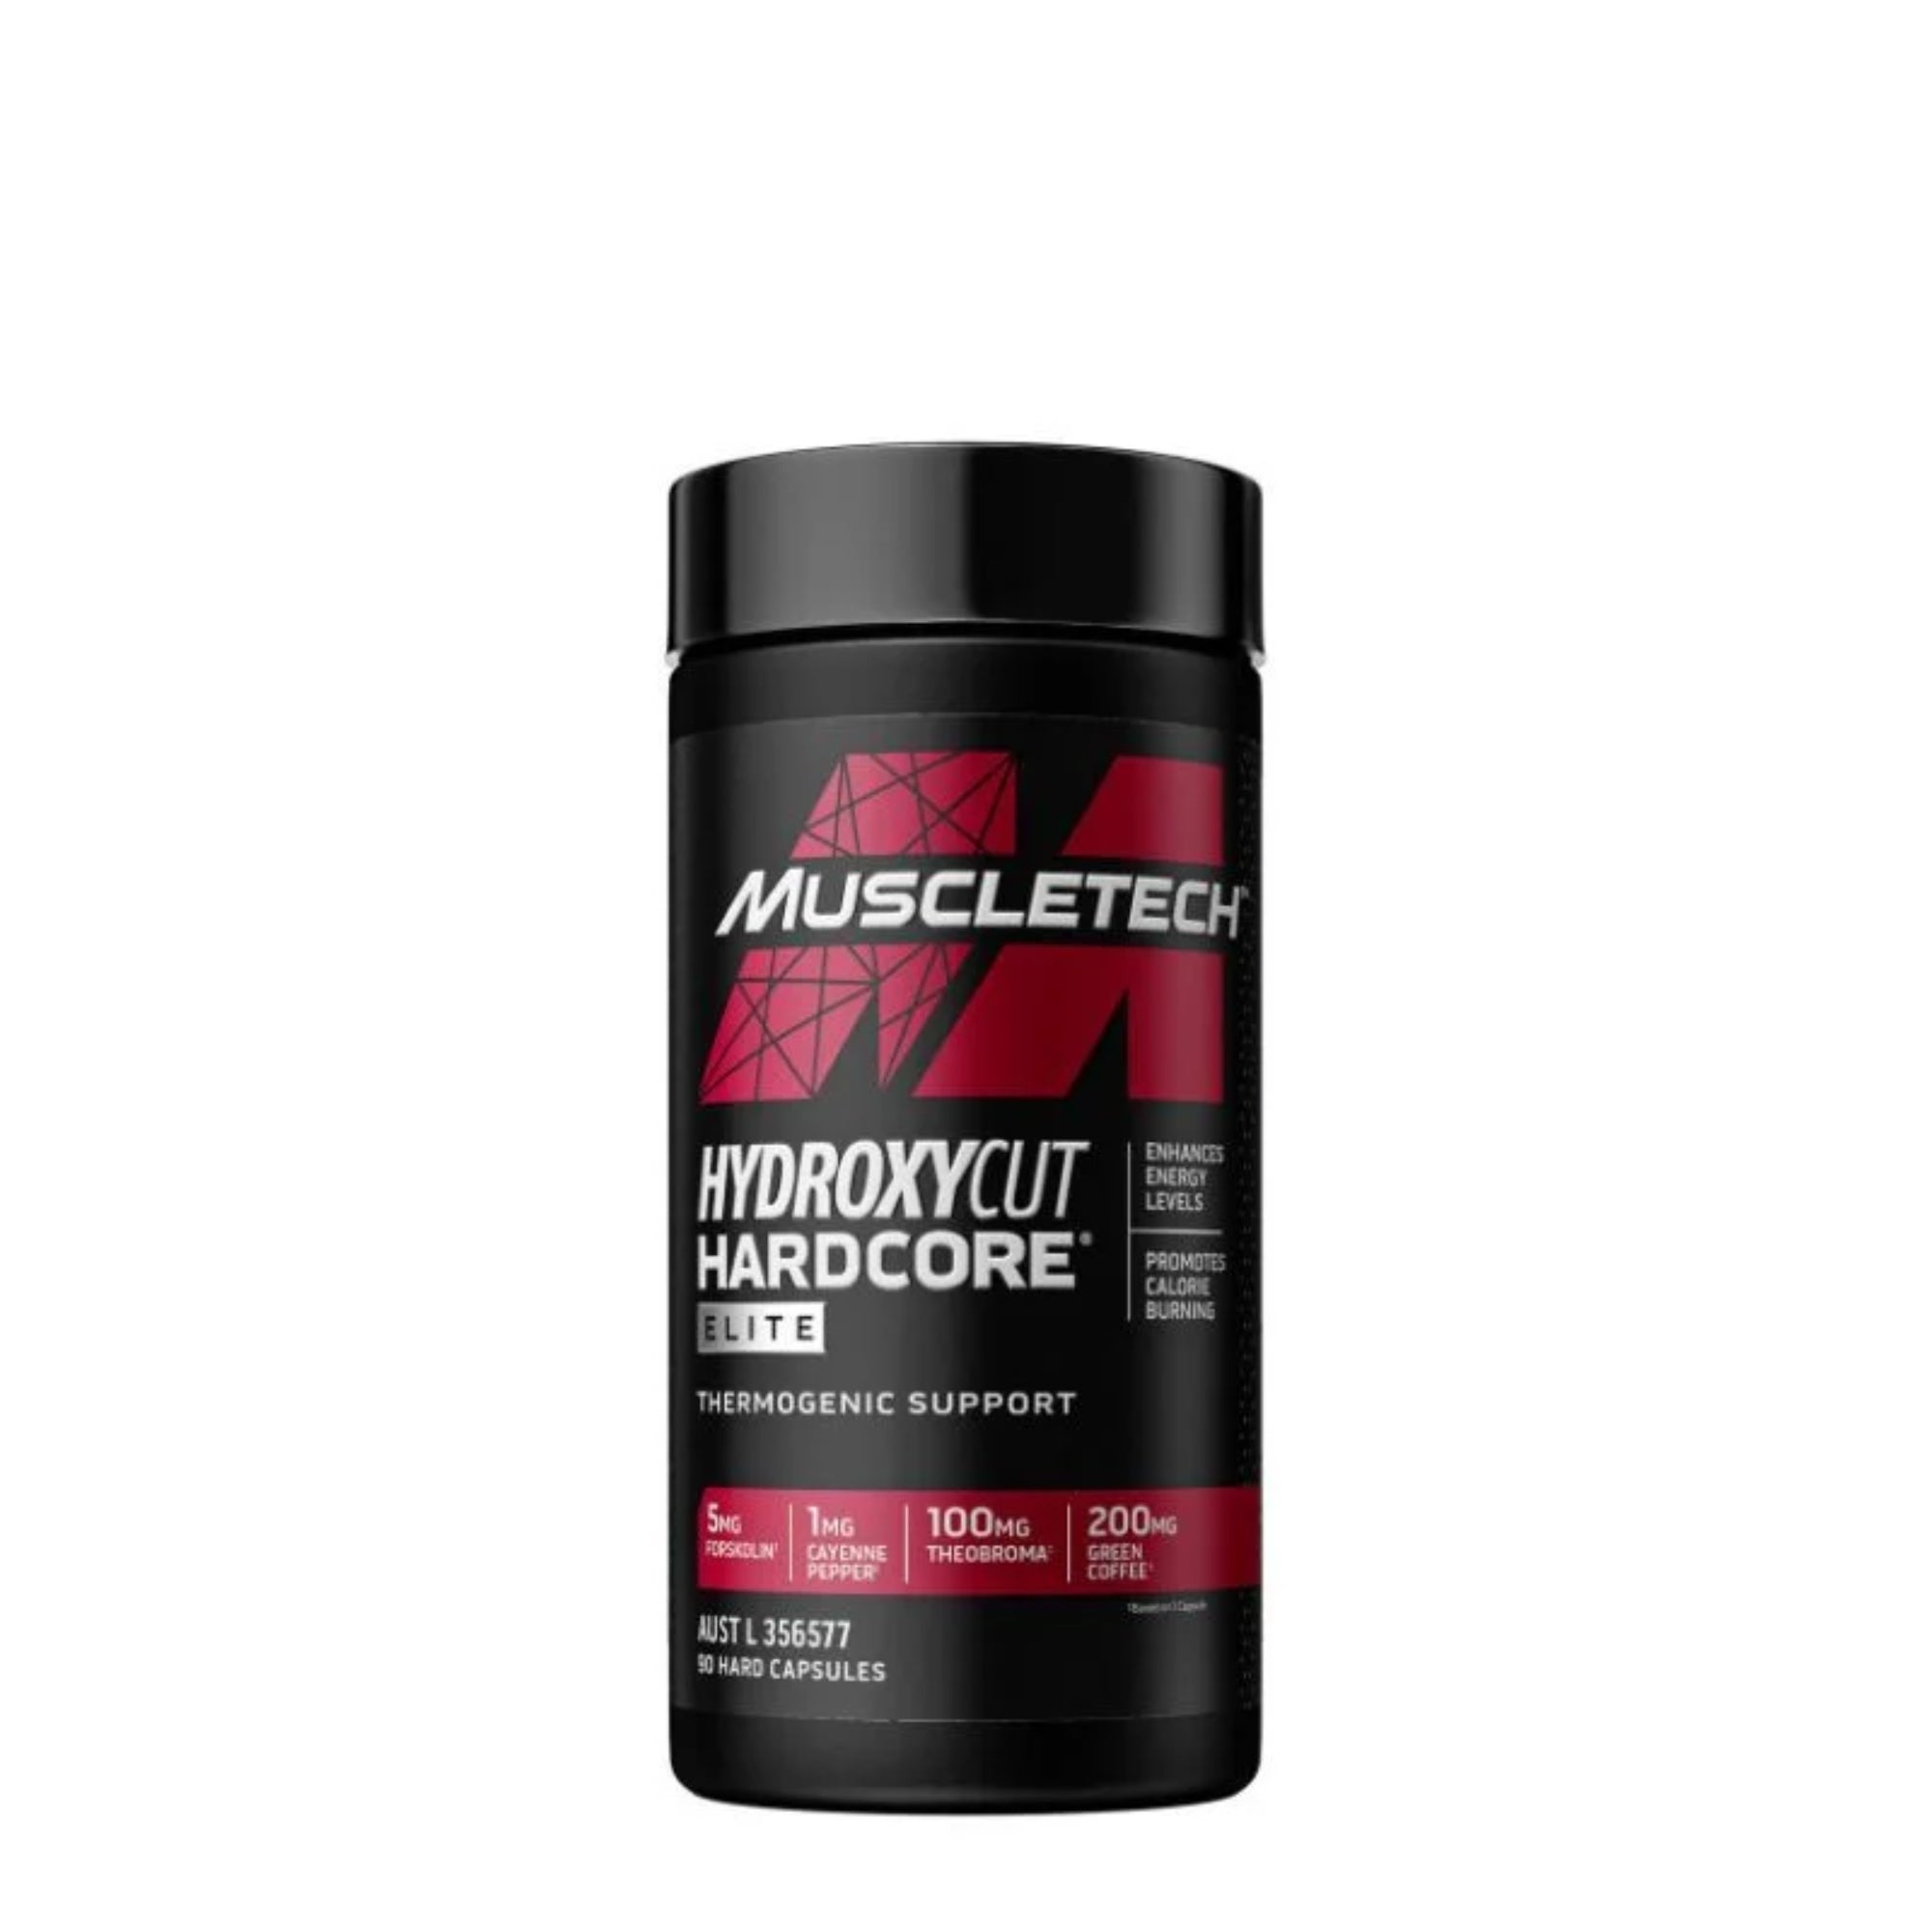 Muscletech Hydroxycut HardCore Elite